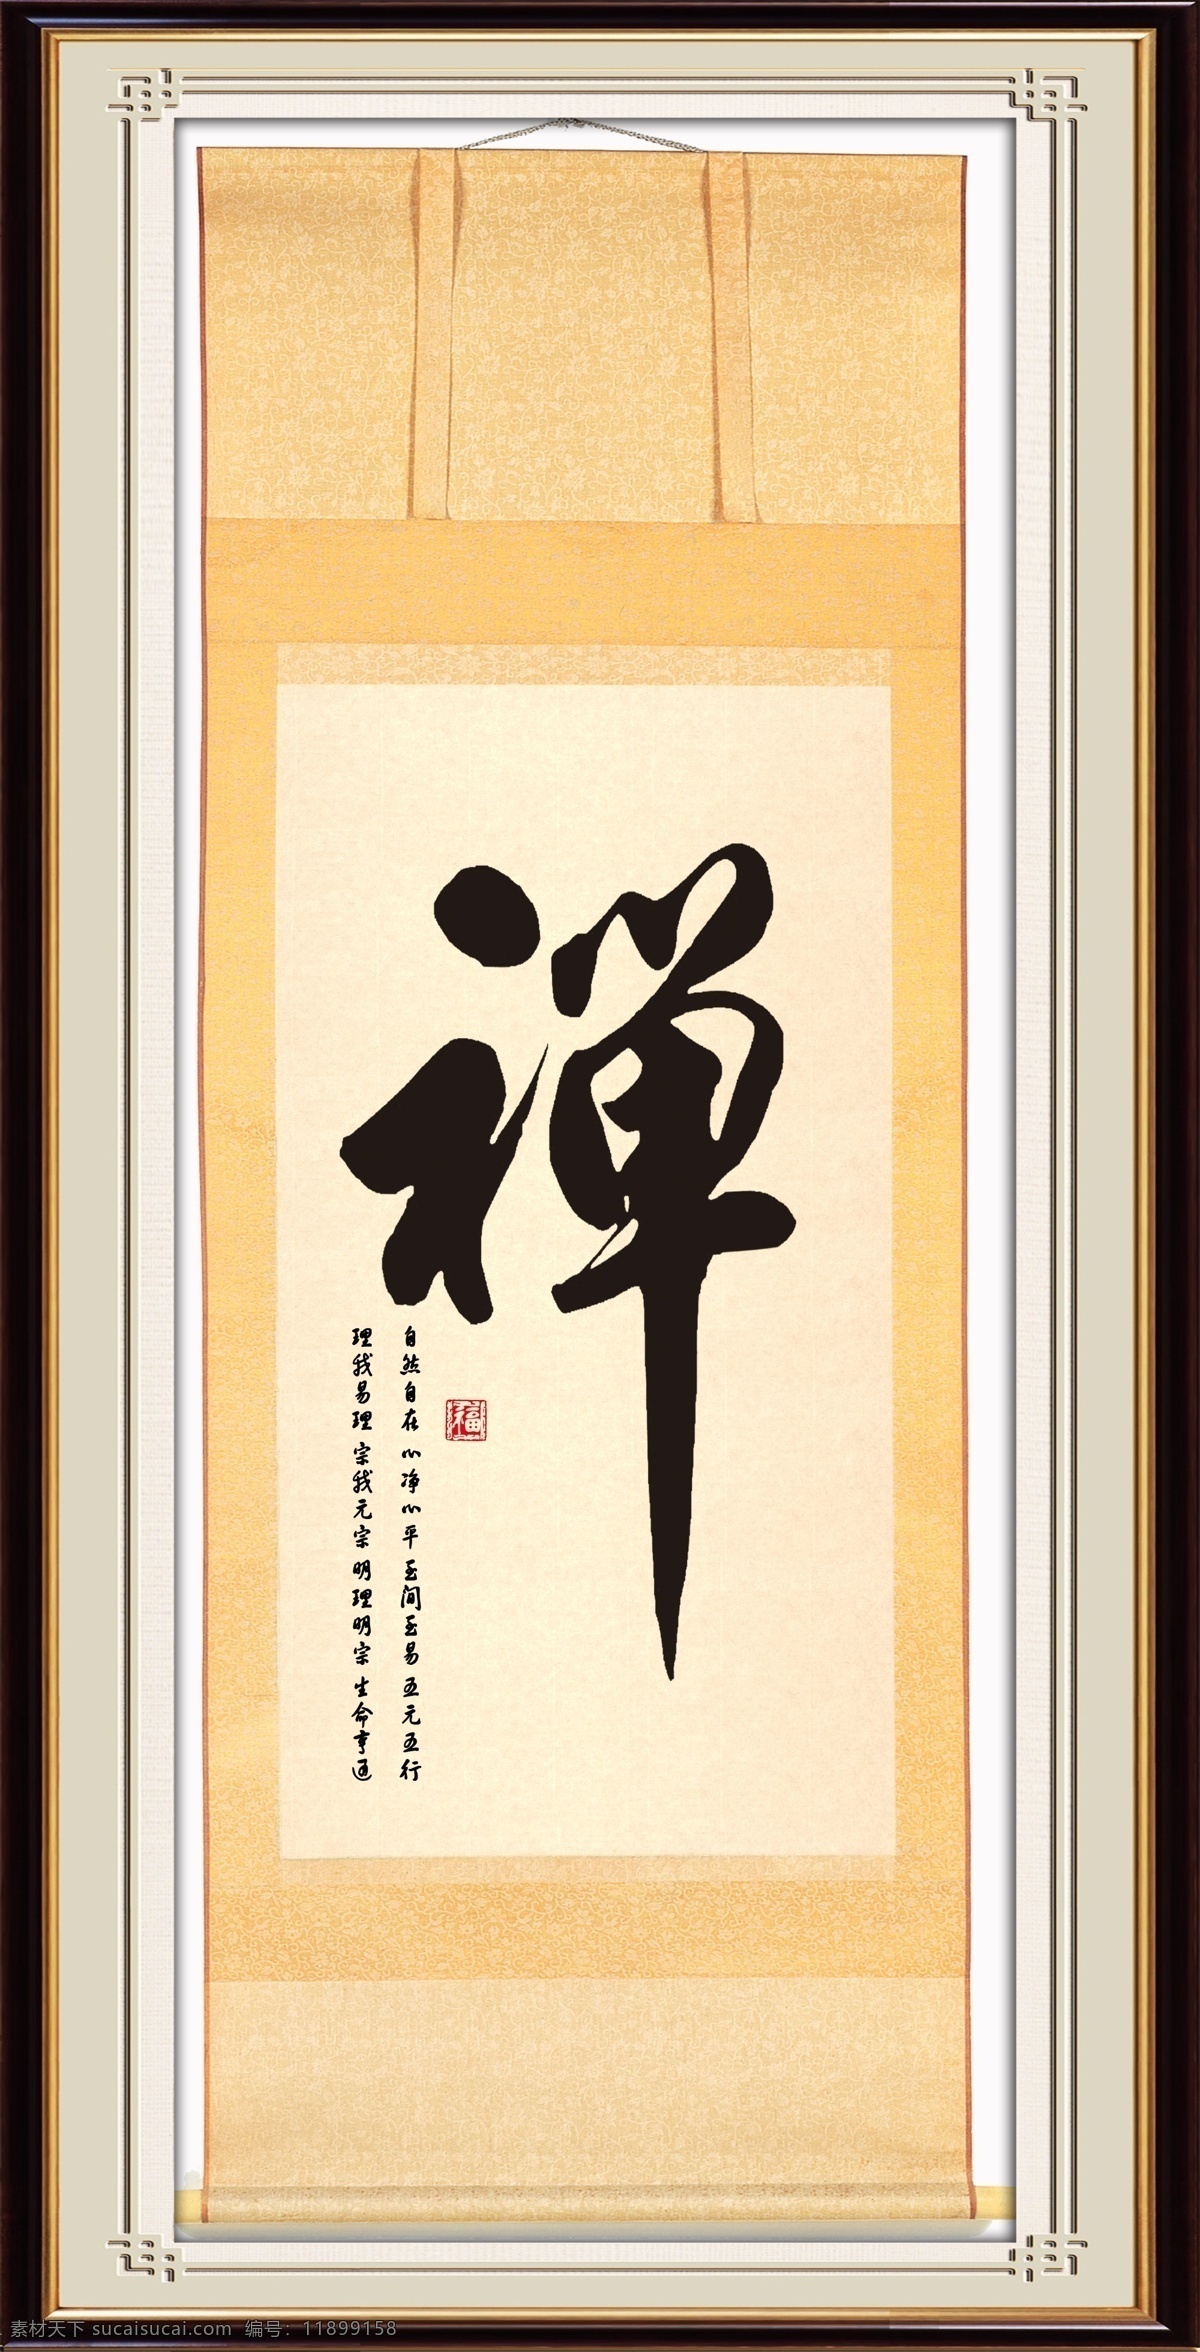 禅图片 字画 禅 相框 装裱 传统文化 中国风 佛教 中国印 中国 风 分层